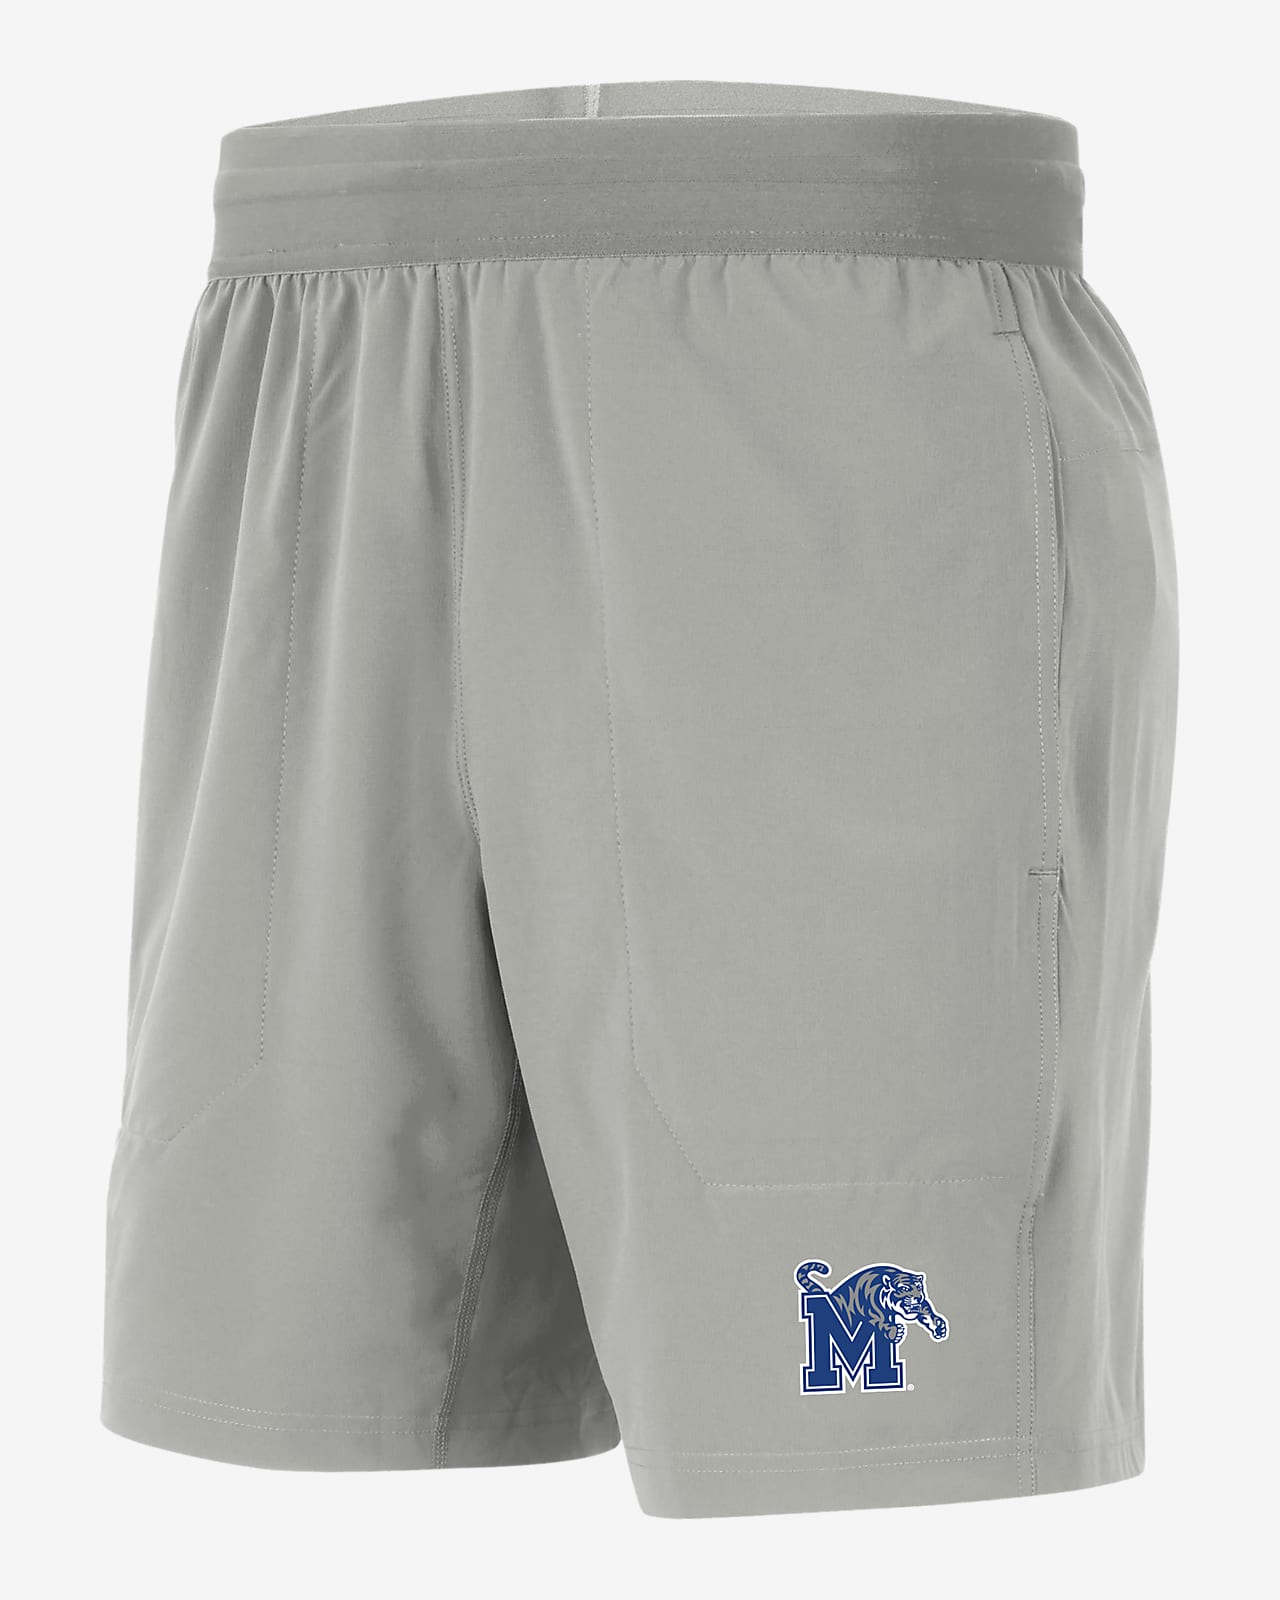 Shorts universitarios Nike para hombre Memphis Player